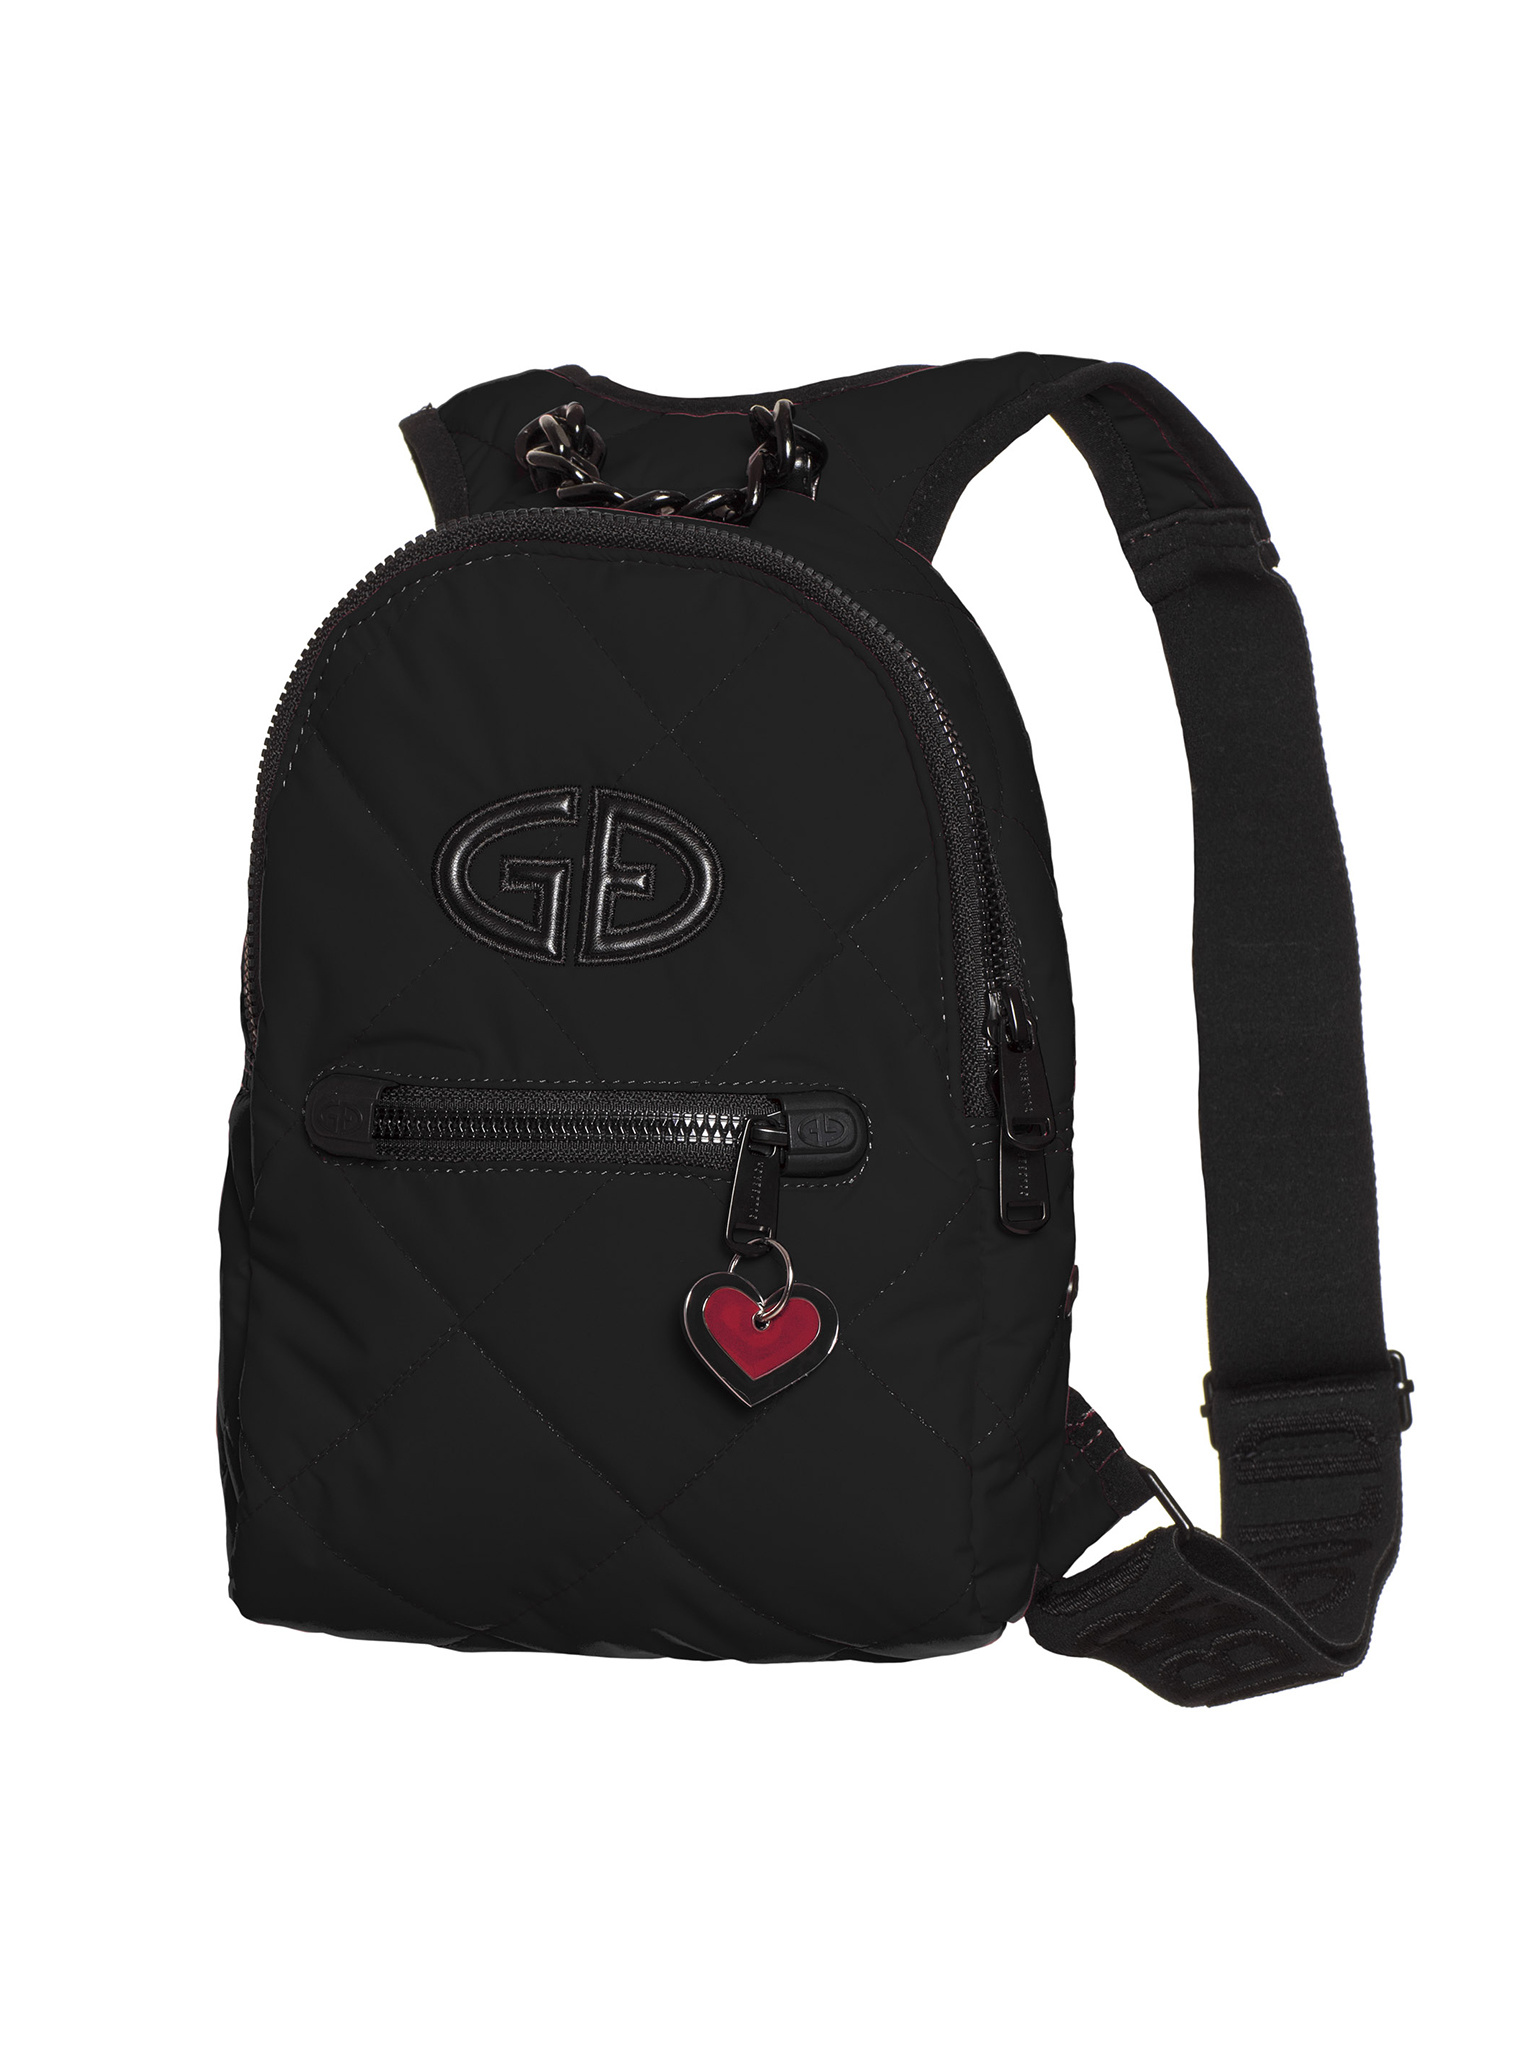 Goldbergh Backpack – Black - Free Style